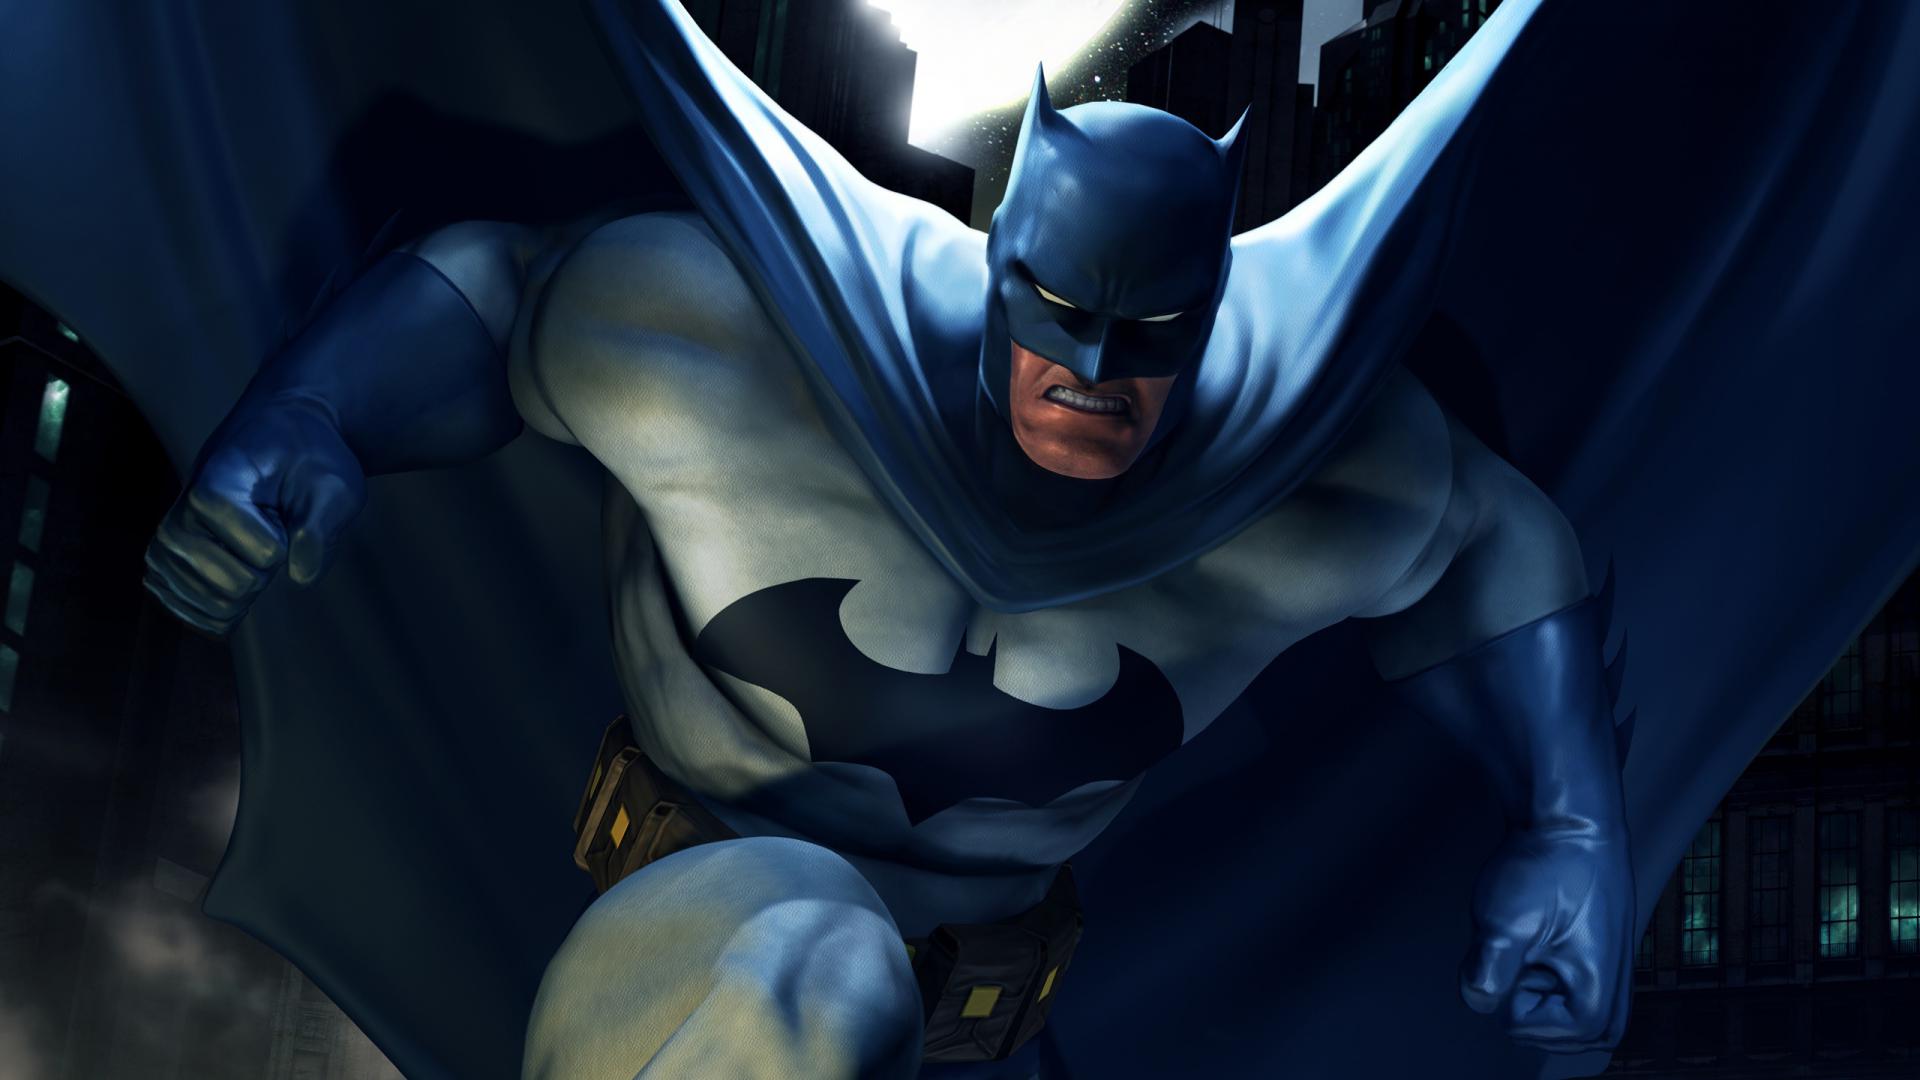 Бэтмен арт обои, кино заставки, мульфильм, Batman, dc universe, 2560 на 1440 пикселей